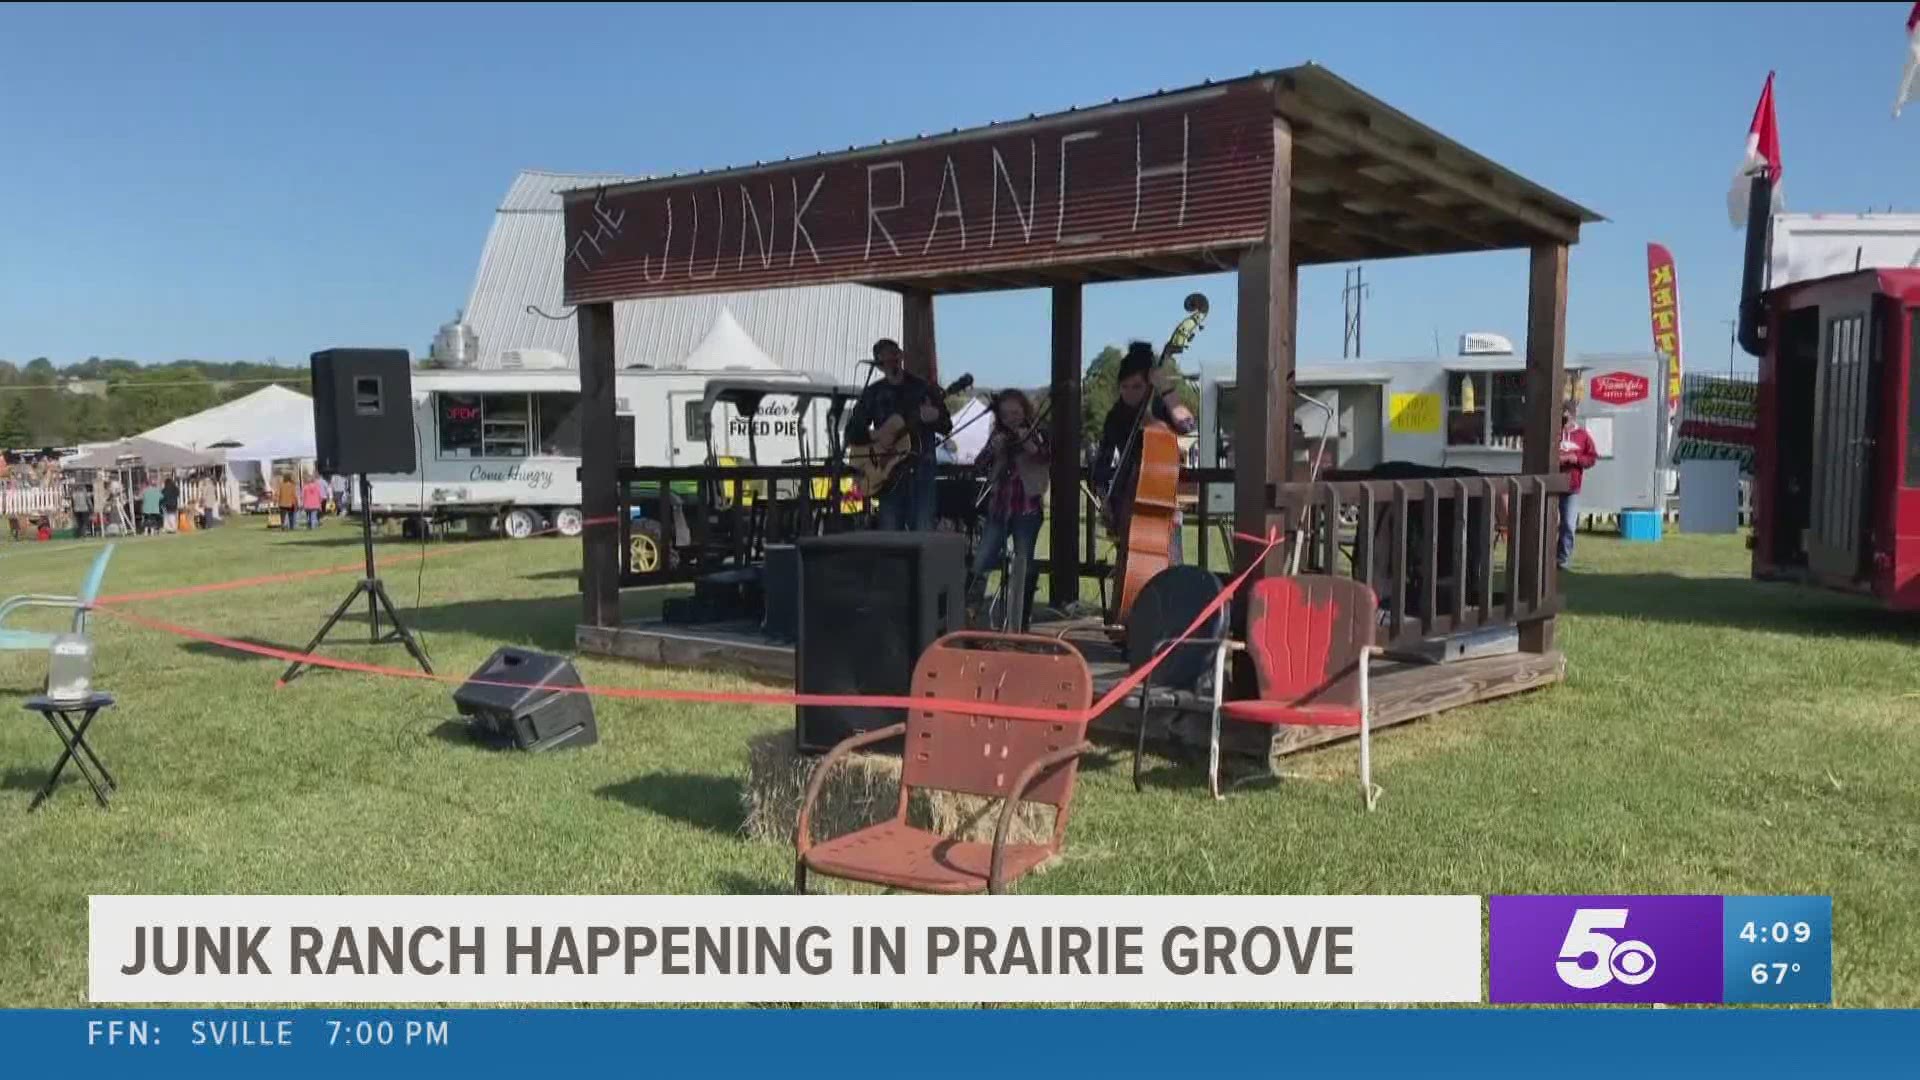 The Junk Ranch underway in Prairie Grove.